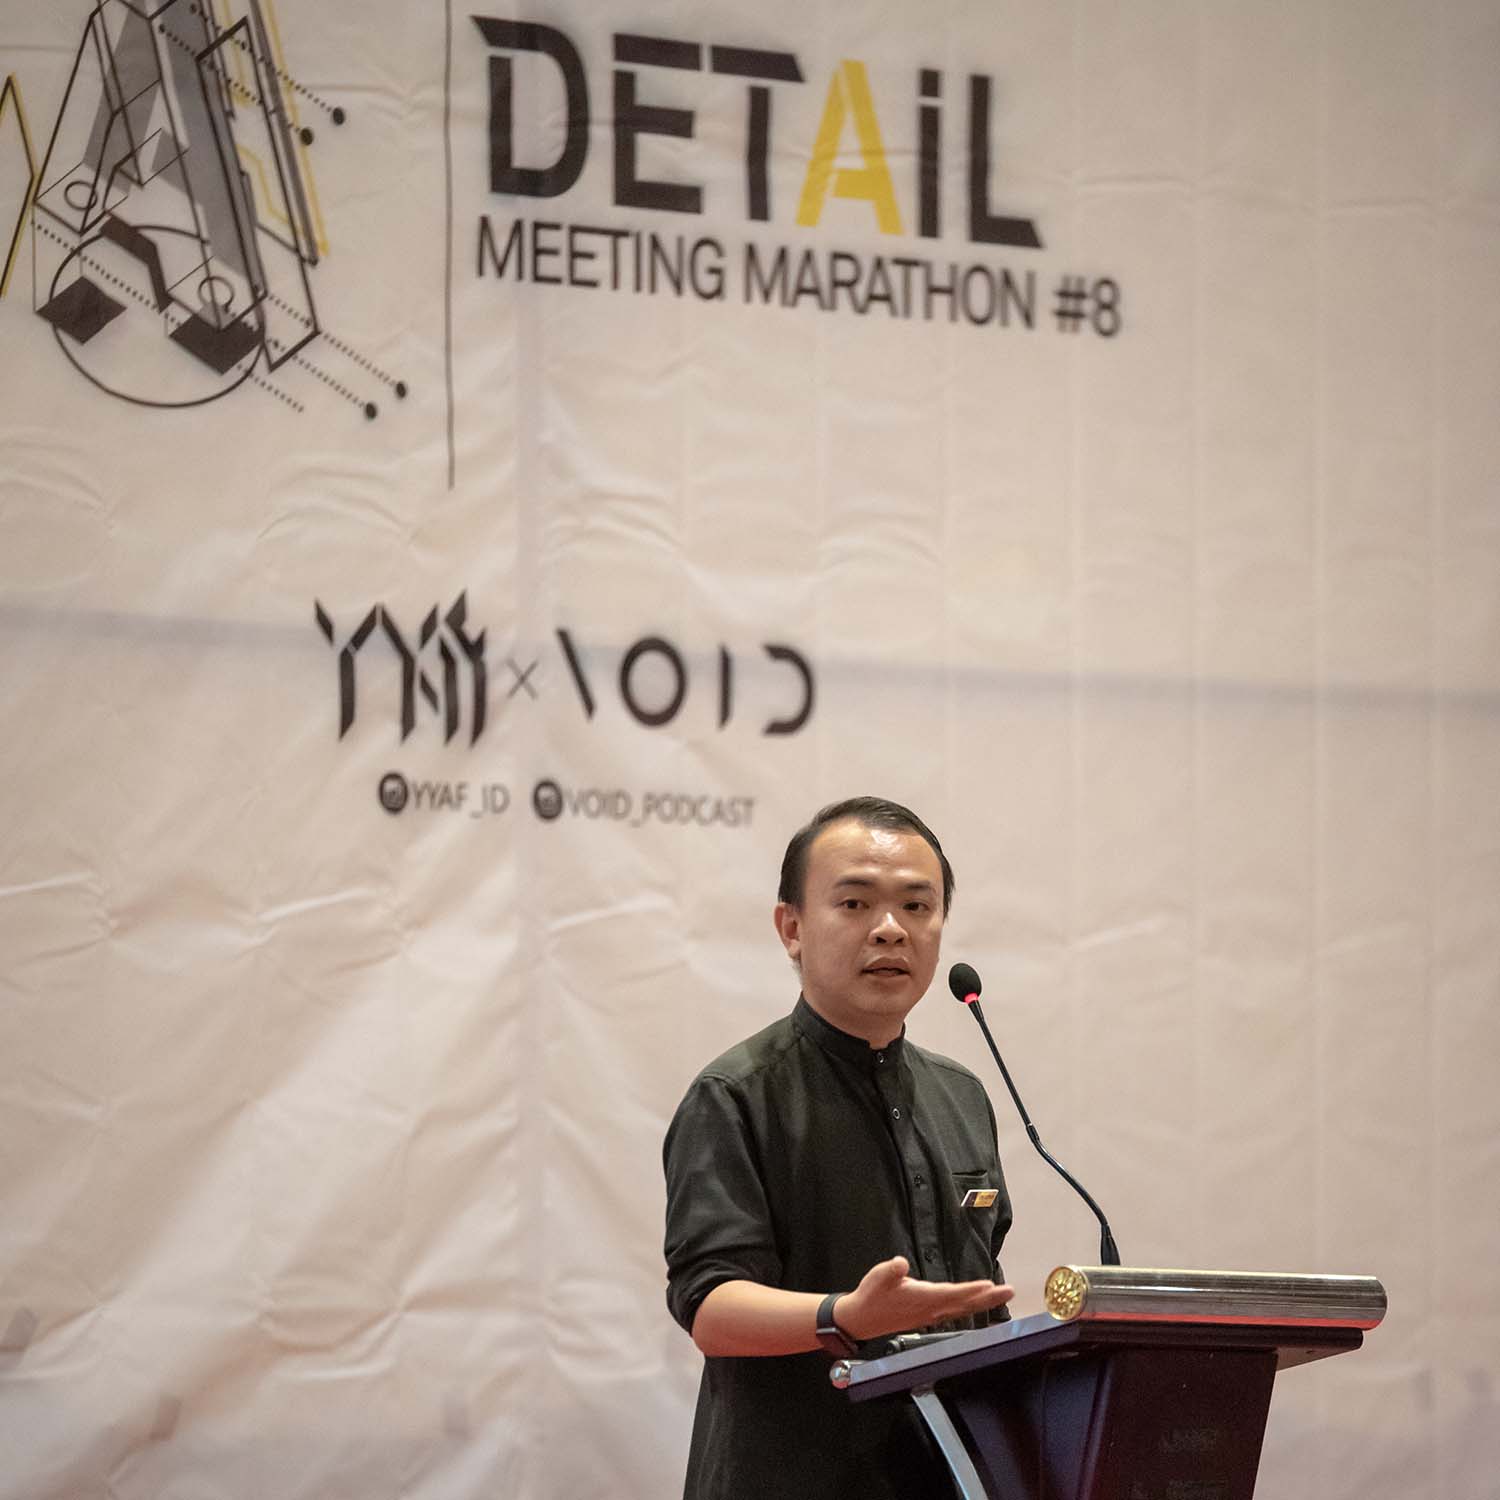 YYAF Meeting Marathon #8 Mengetengahkan Detail Arsitektur dan Proses Desain